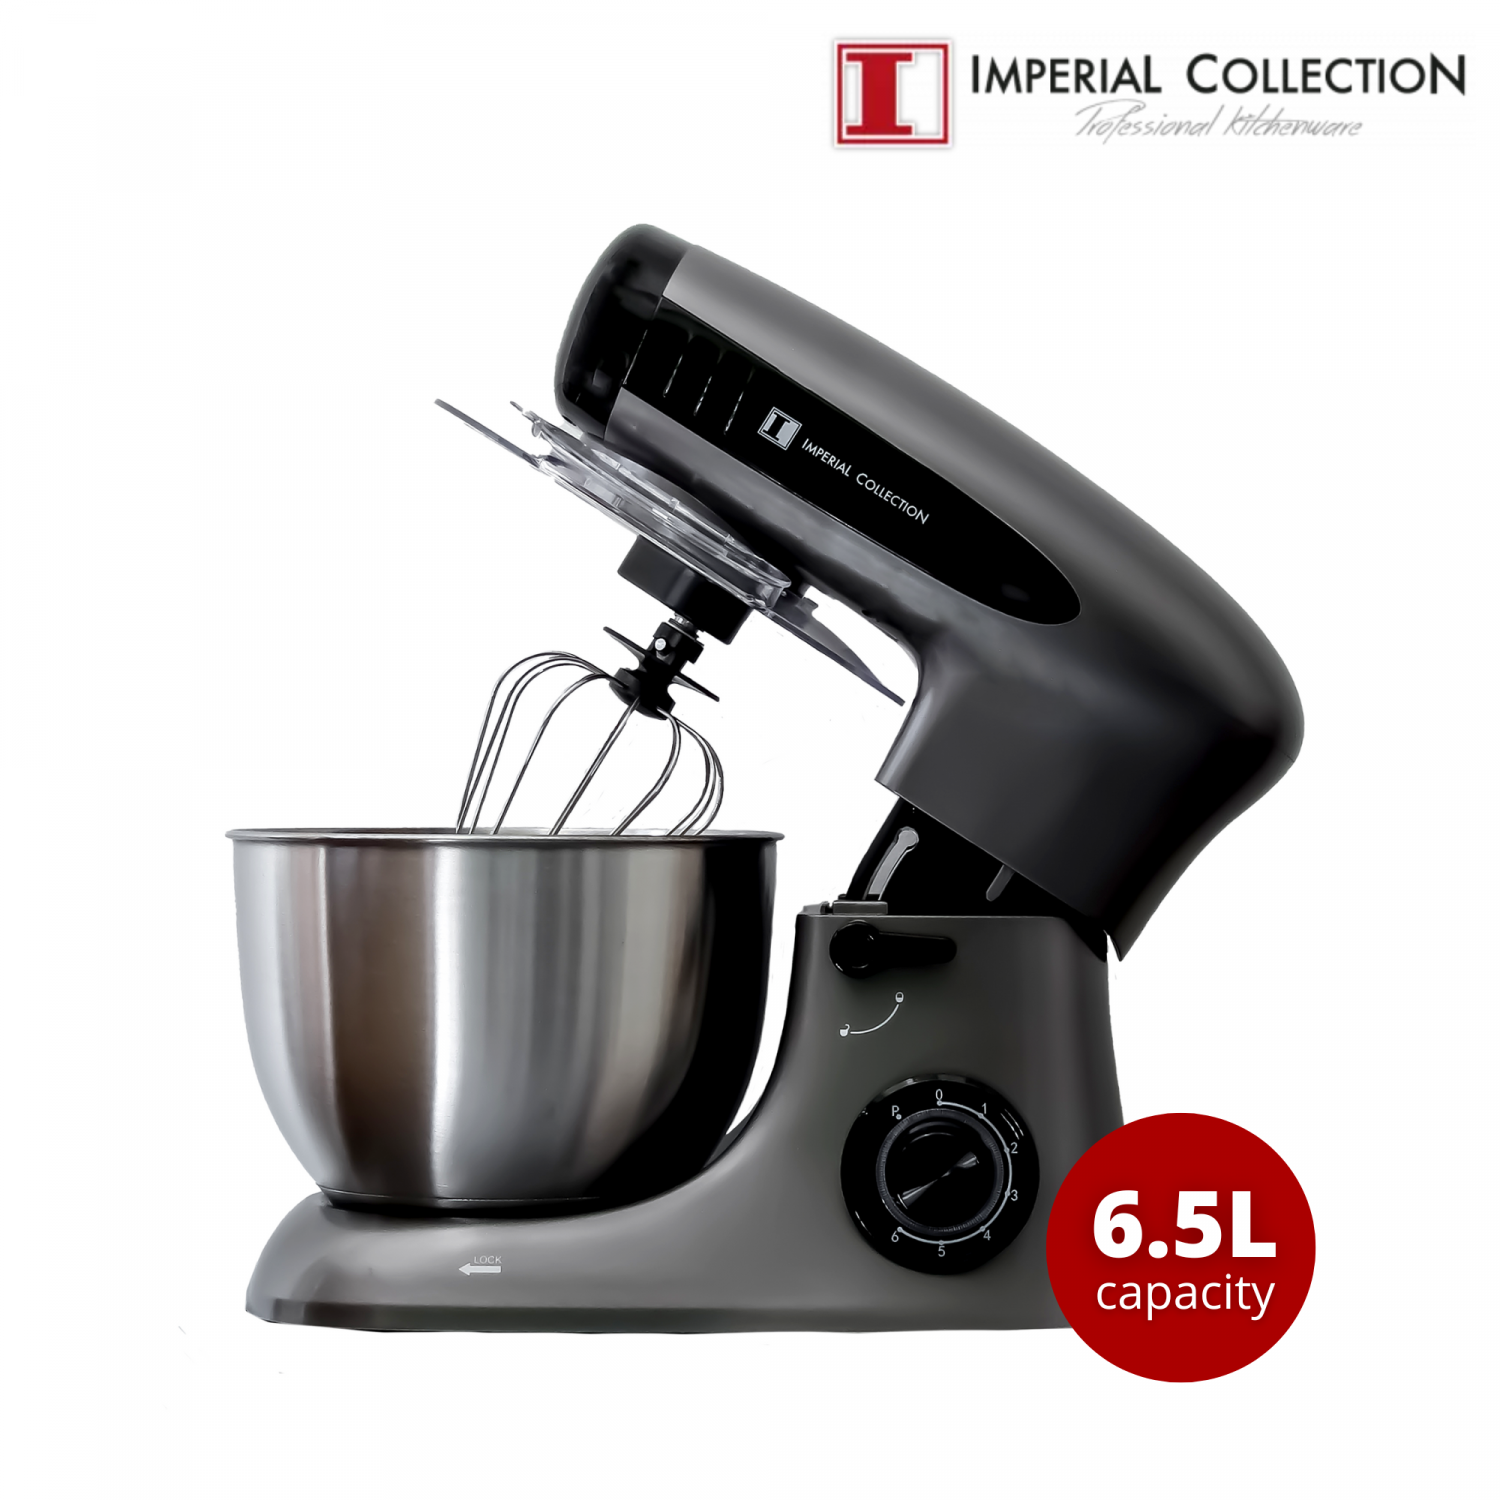 Imperial Collection multifunctionele 4-in-1 mixer/keukenrobot met kantelbare kop, zwart - Design Meubelz